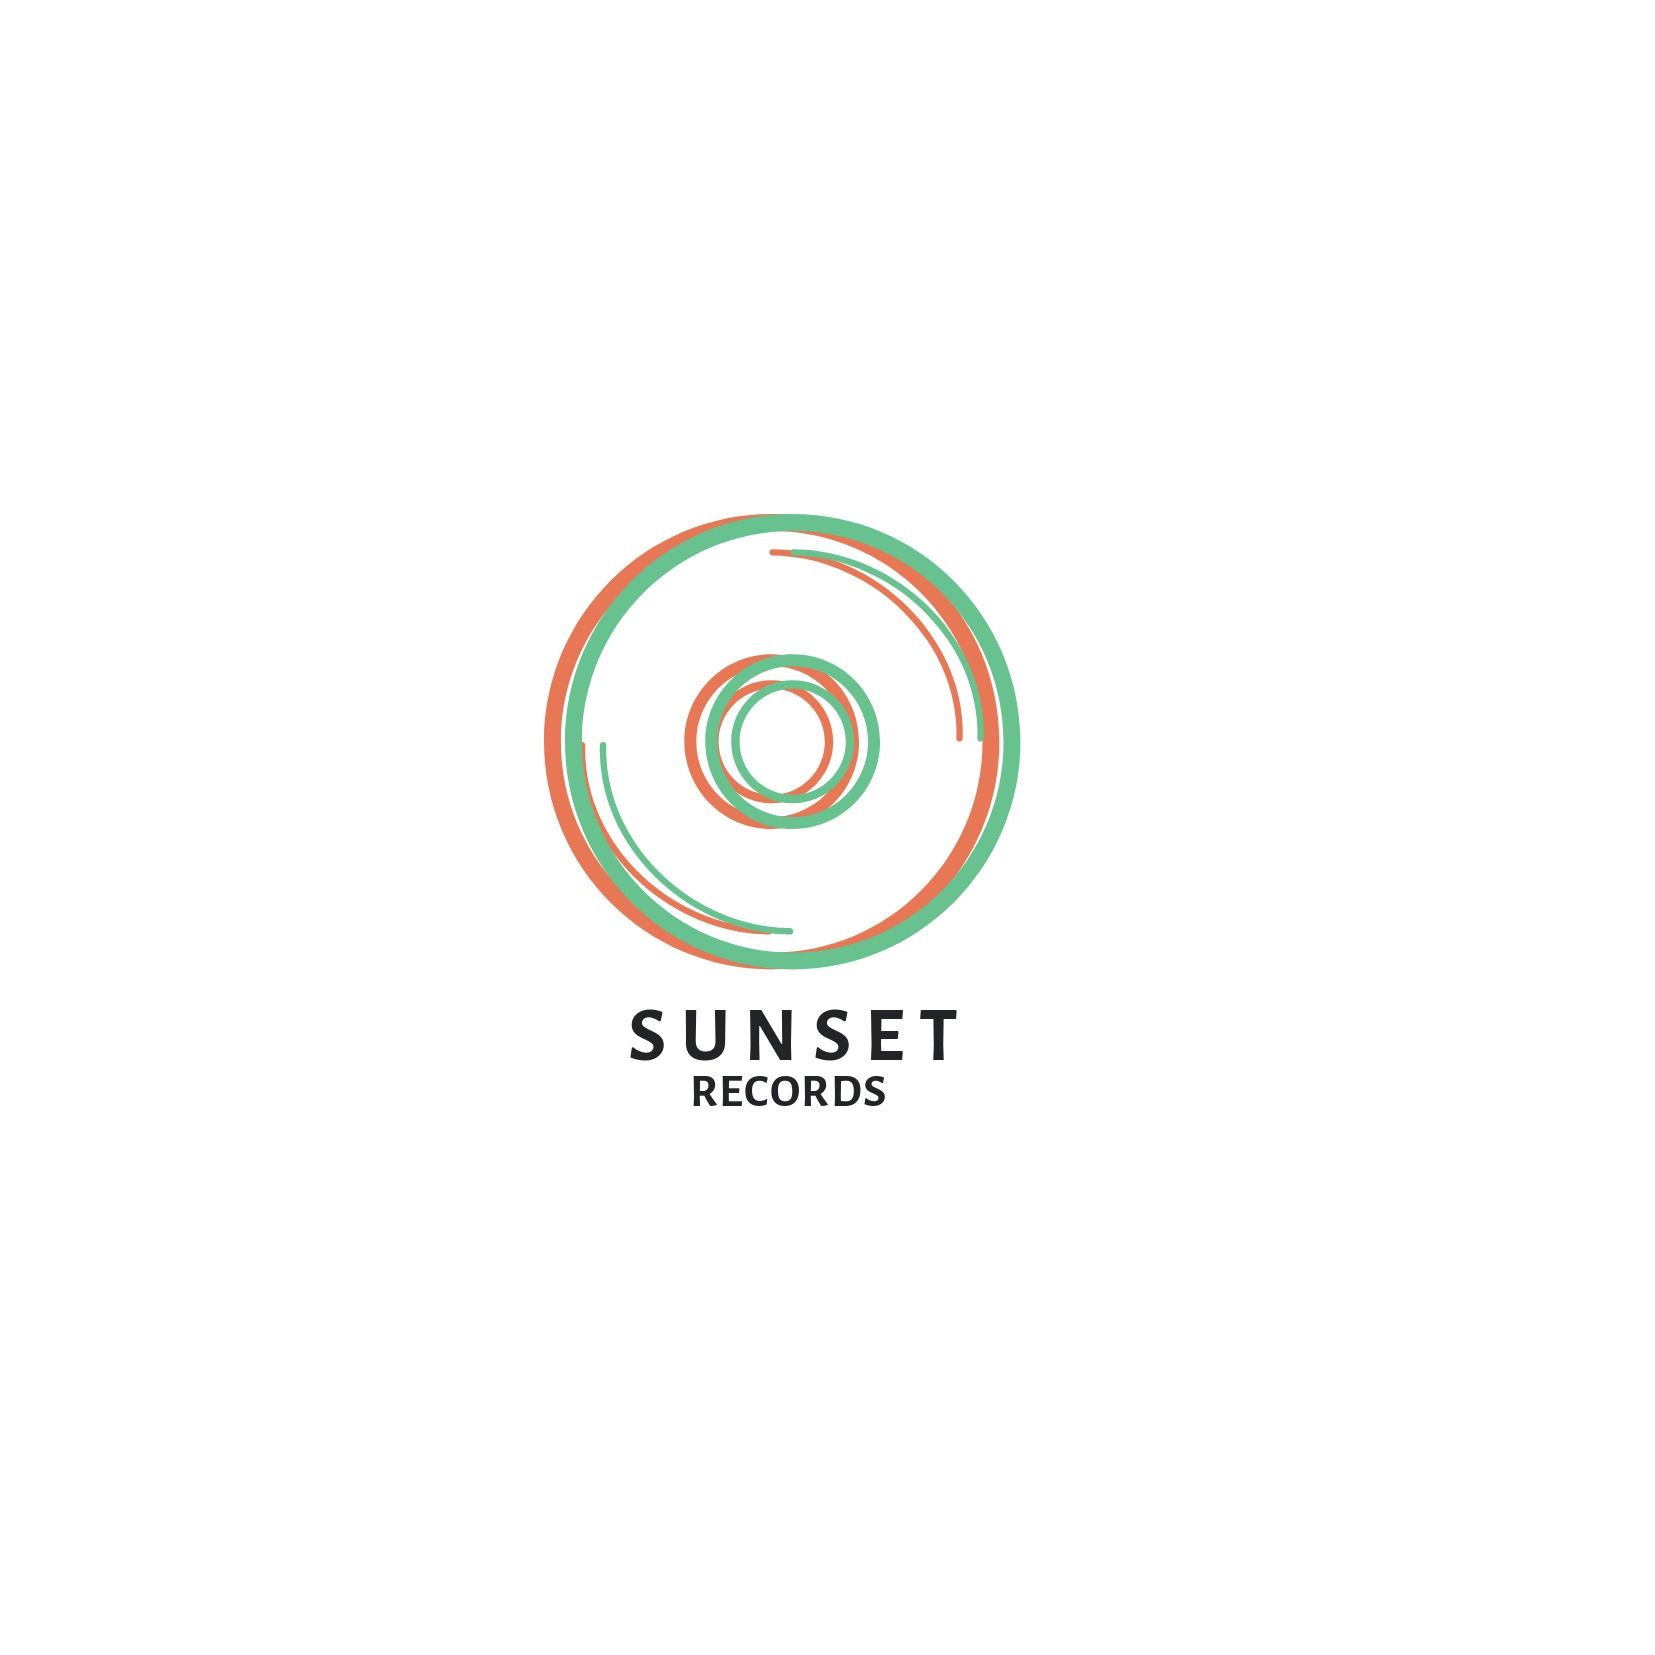 Diseño de logotipo musical con &#39;Sunset Records&#39; como título - Alegreya Sans SC es una fuente profesional adecuada para ilustraciones minimalistas y coloridas - Imagen